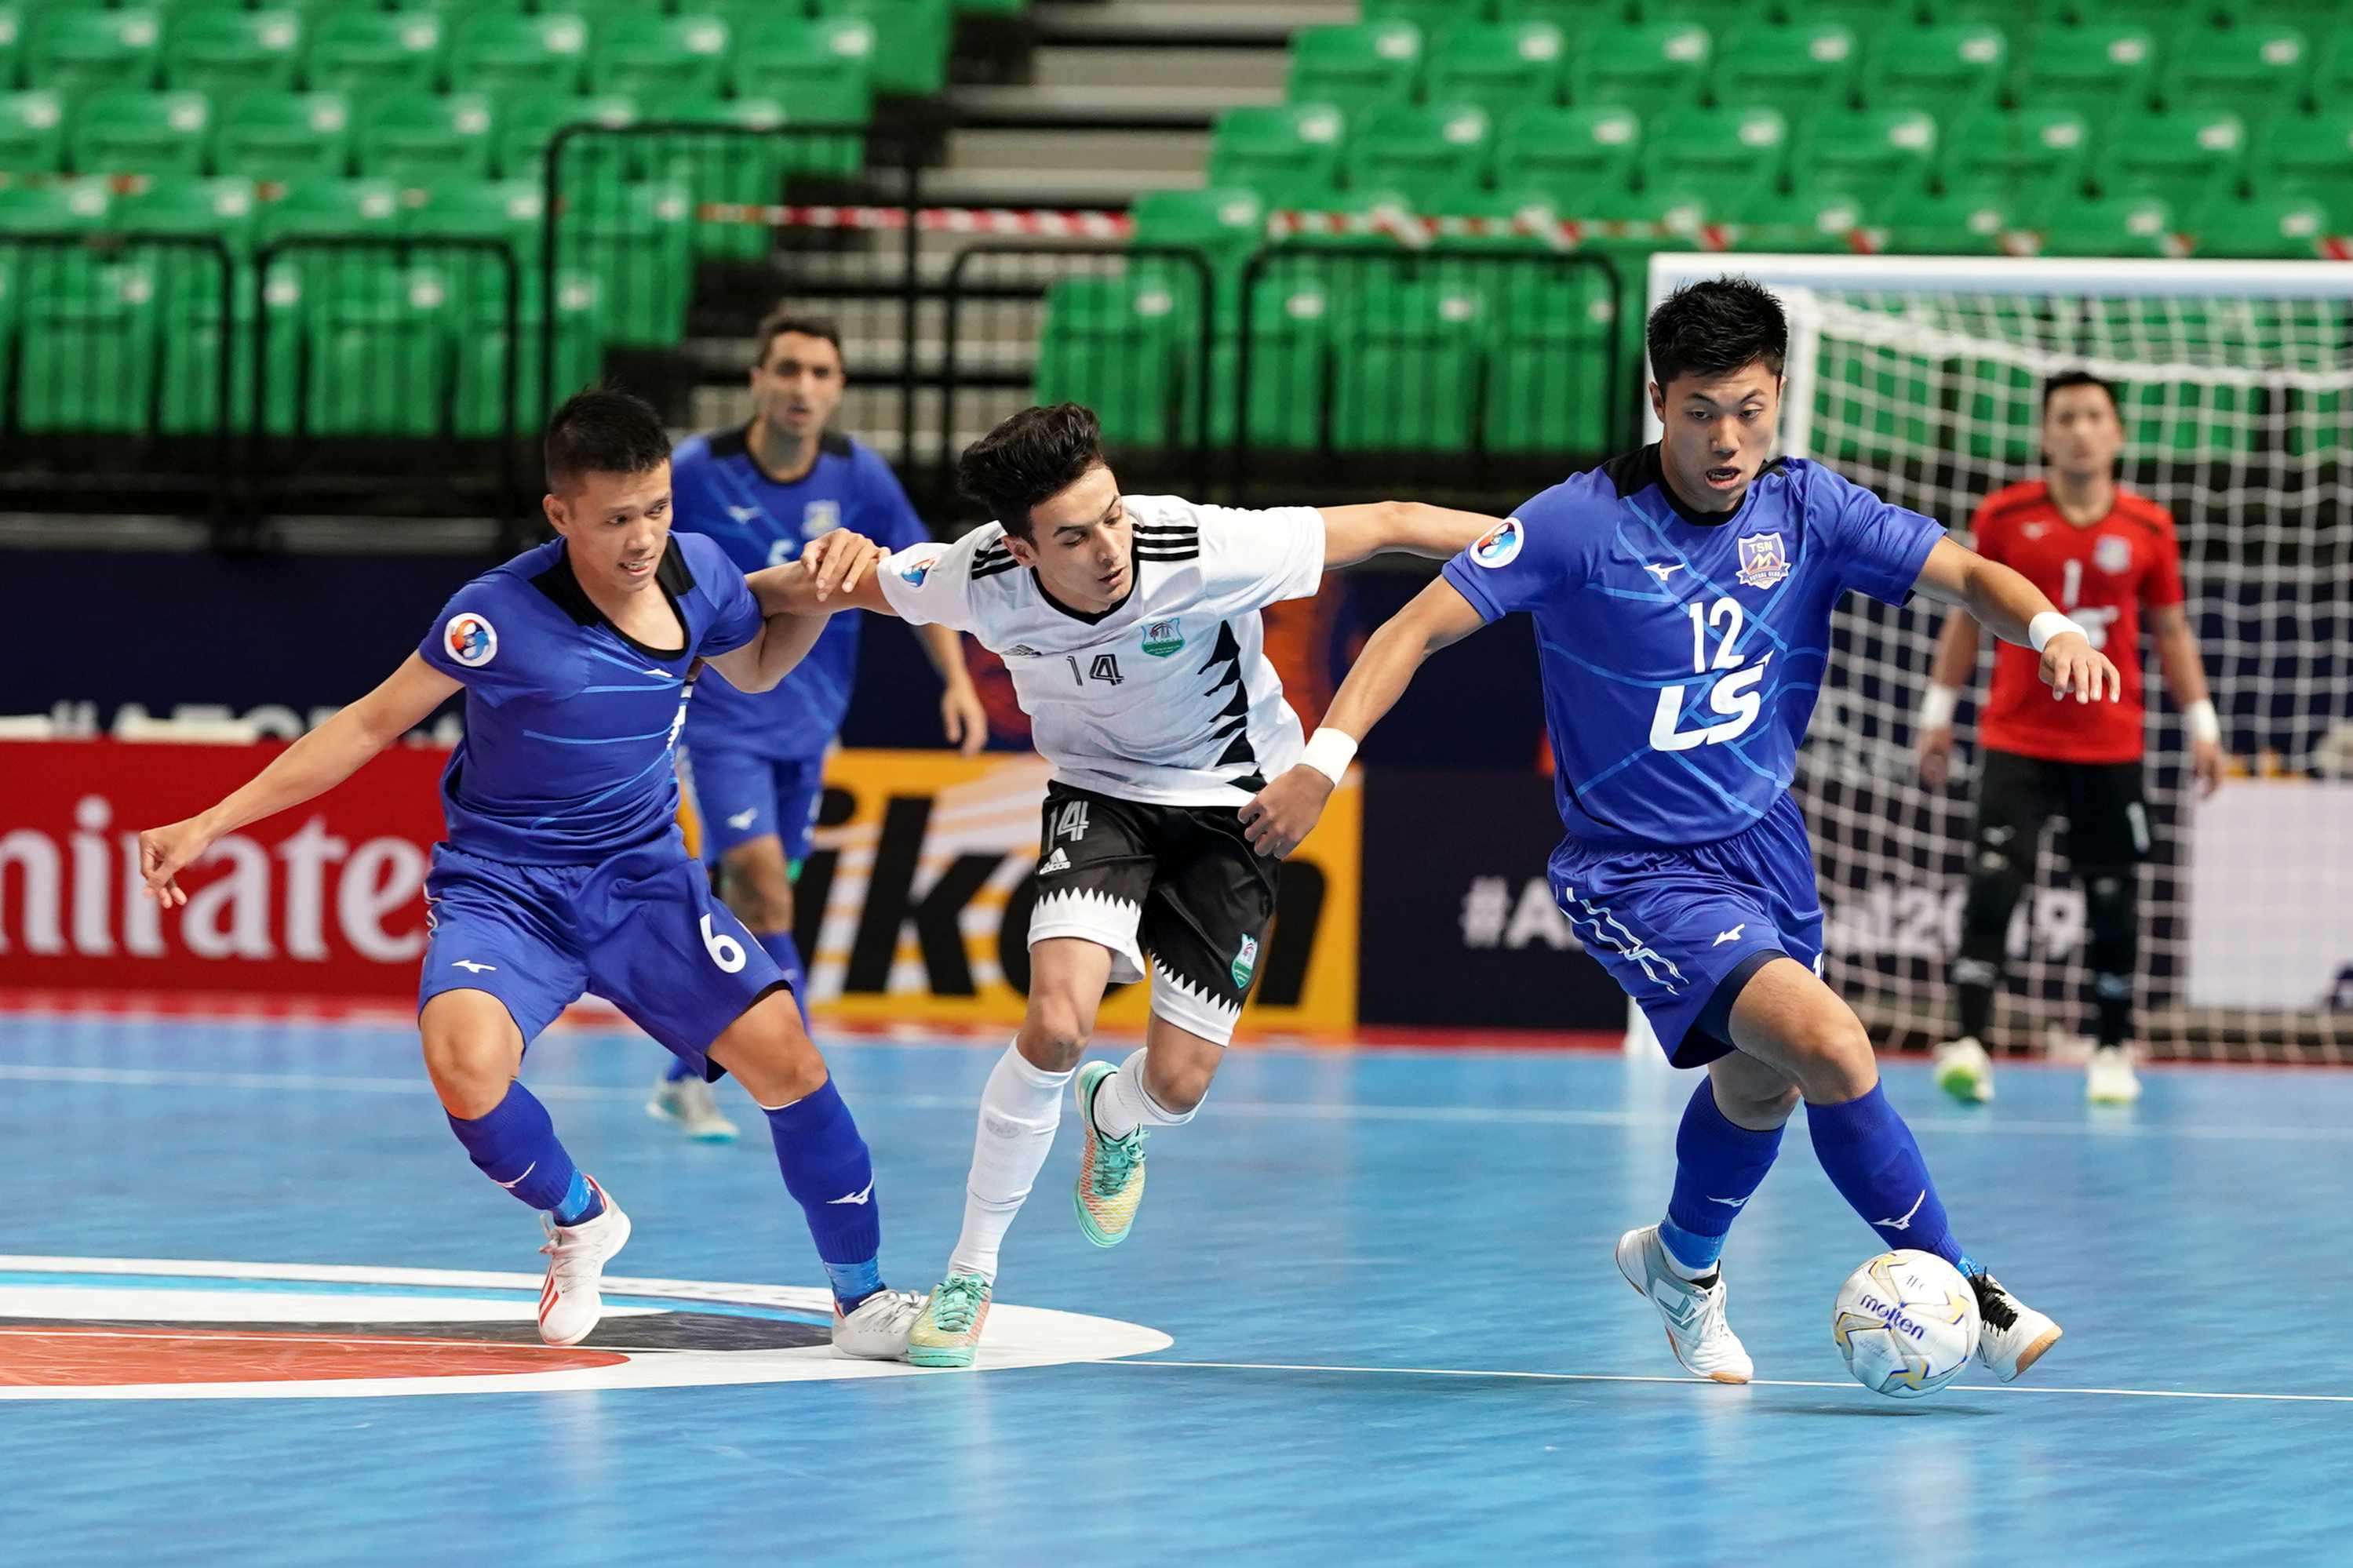 Giải futsal châu Á 2019: Thái Sơn Nam vào tứ kết với 3 trận toàn thắng - Bóng Đá